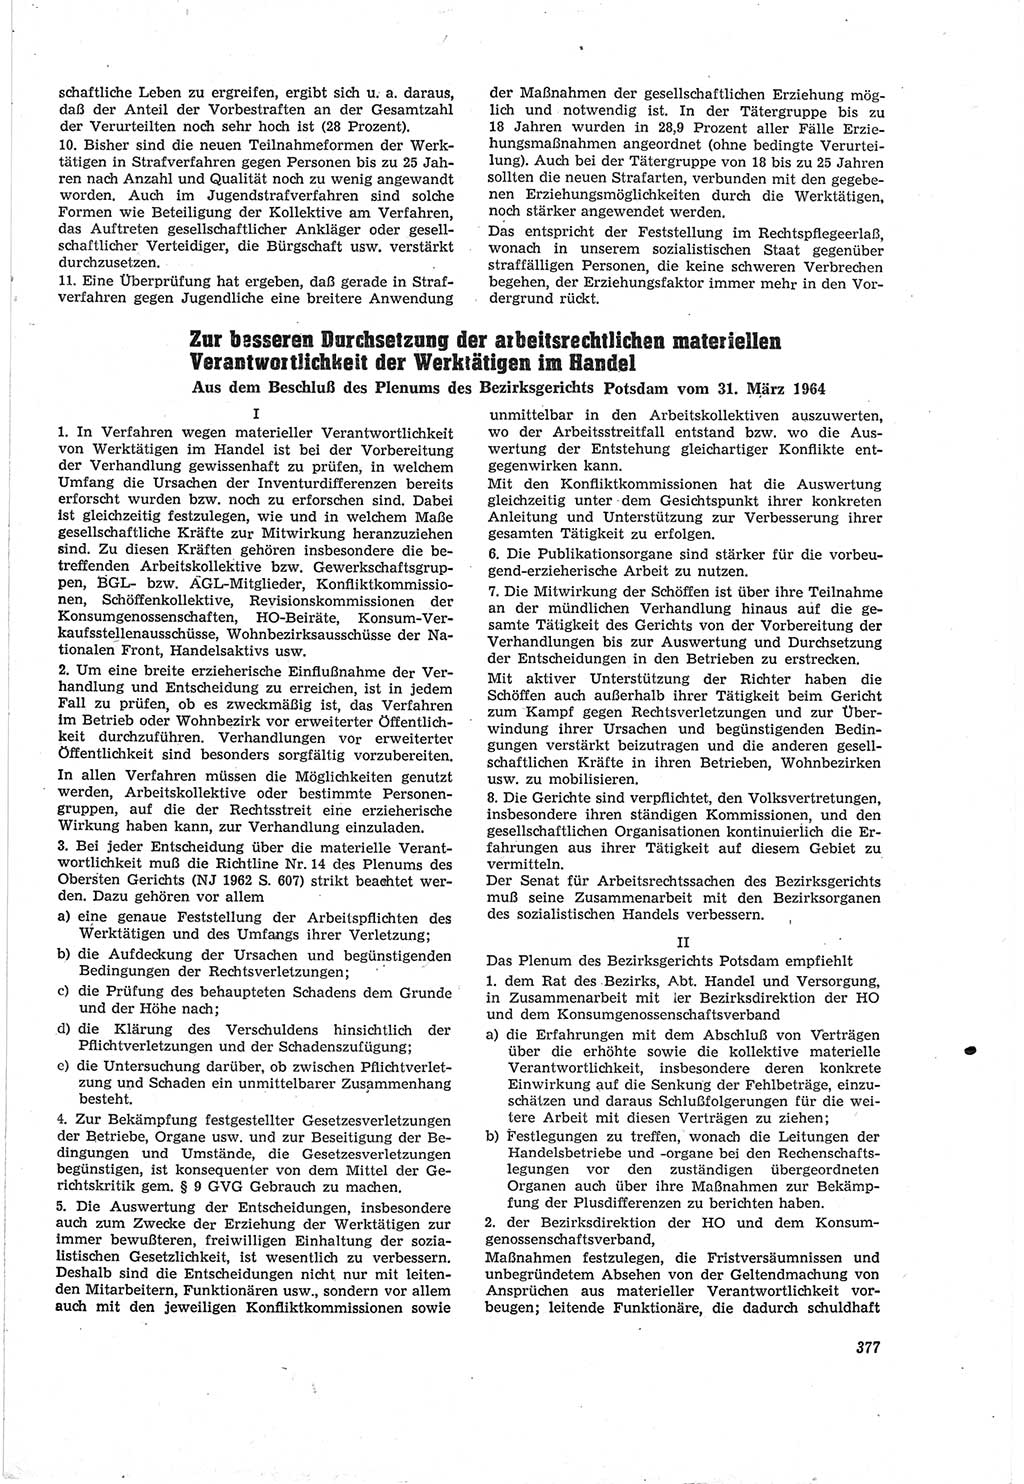 Neue Justiz (NJ), Zeitschrift für Recht und Rechtswissenschaft [Deutsche Demokratische Republik (DDR)], 18. Jahrgang 1964, Seite 377 (NJ DDR 1964, S. 377)